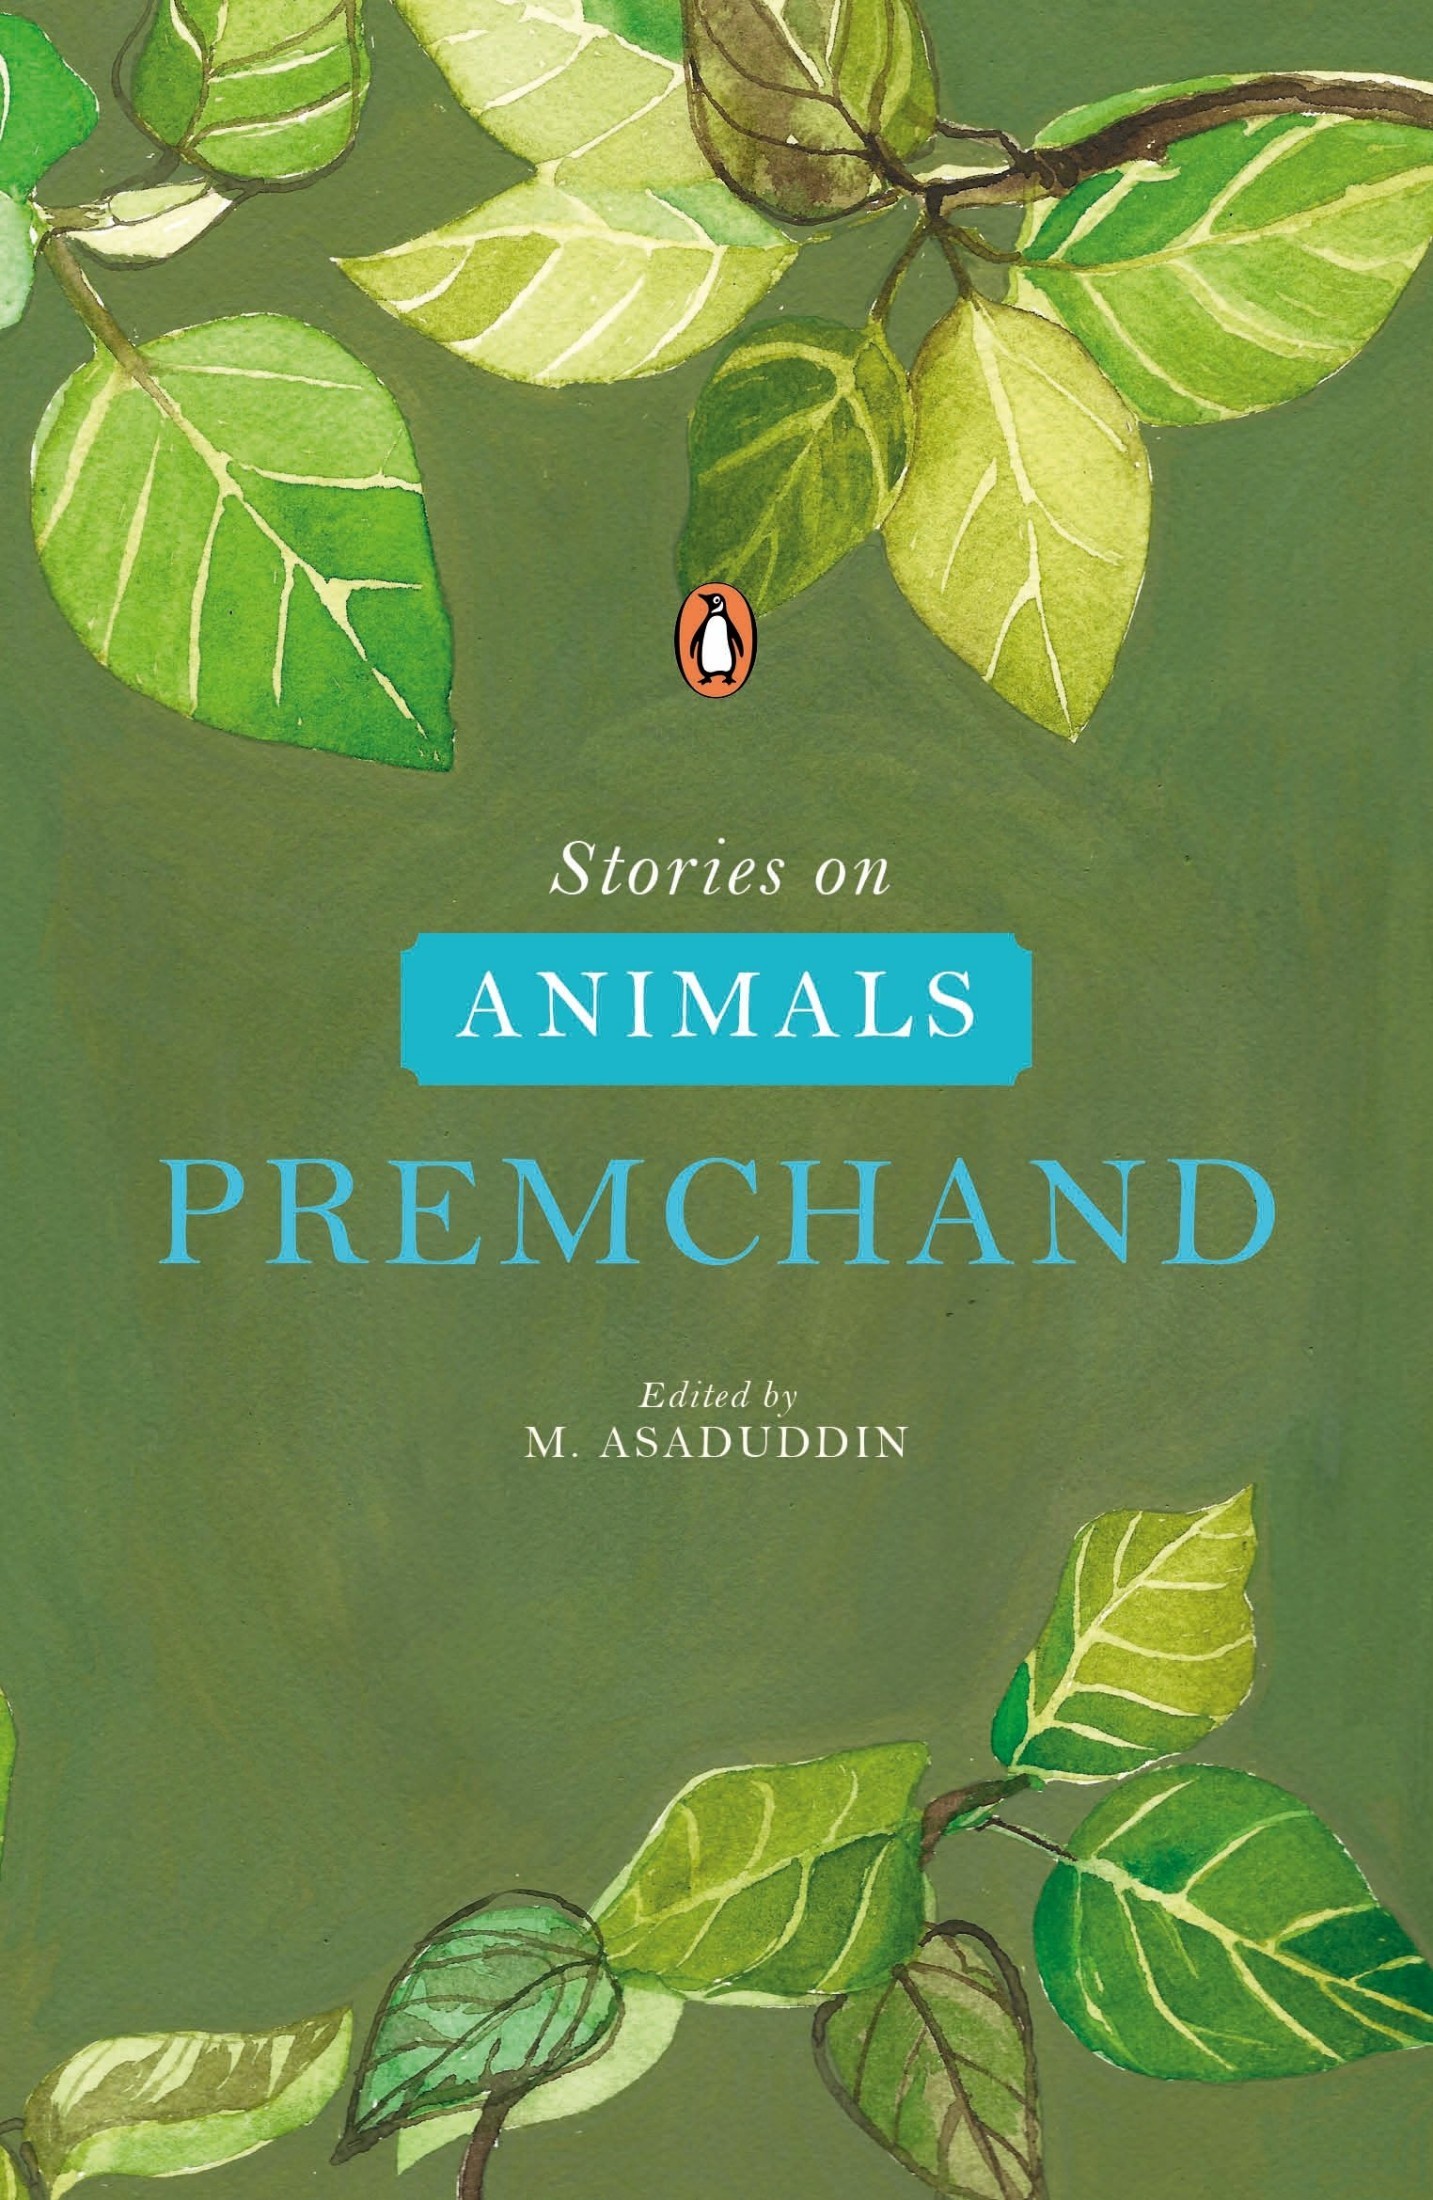 Stories on Animals